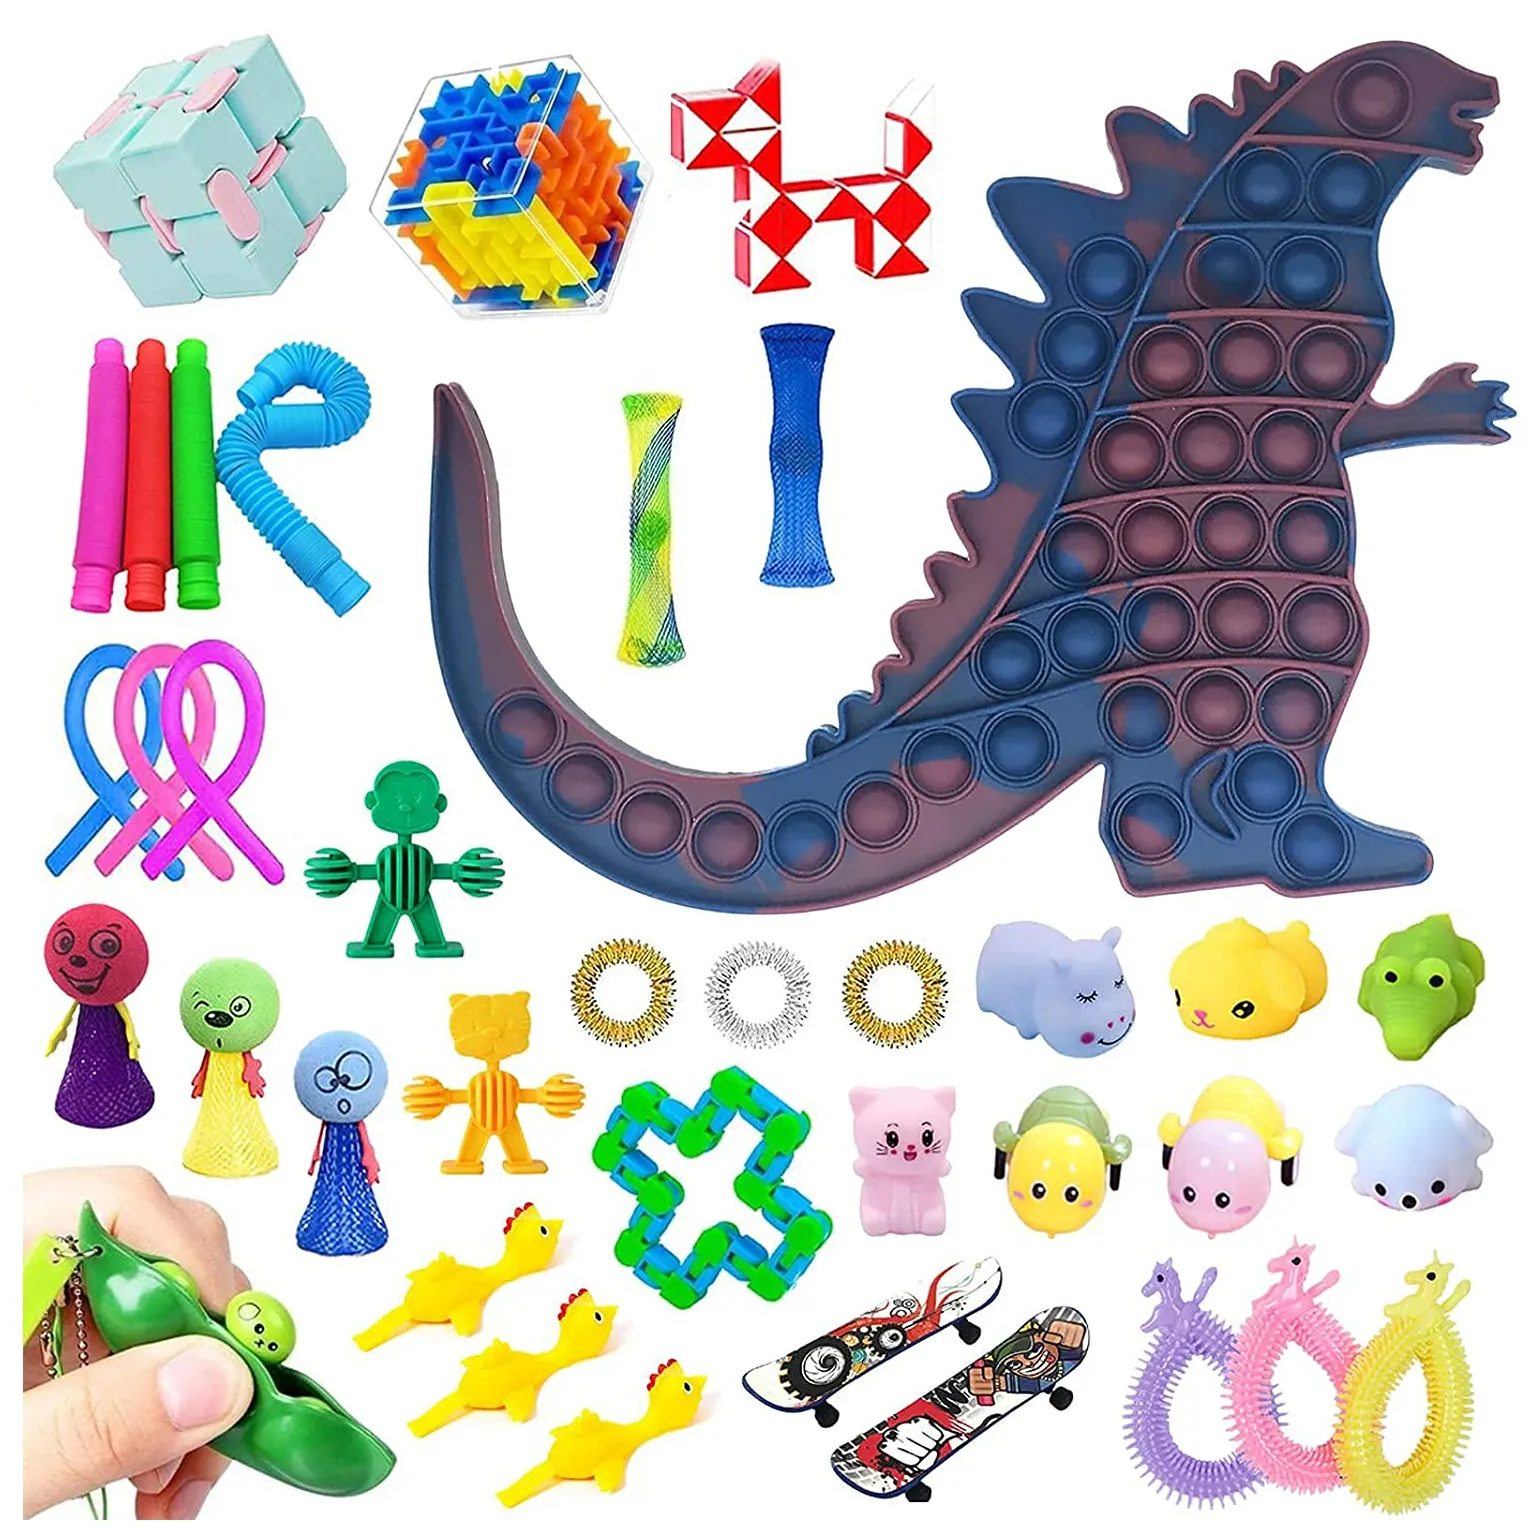 JYTZ065 25 Pcs Best Stress Relief Fidget Toys Pack Kit Balls Fruits Sensory Fidget Toys Set With Simple For Kids Adults